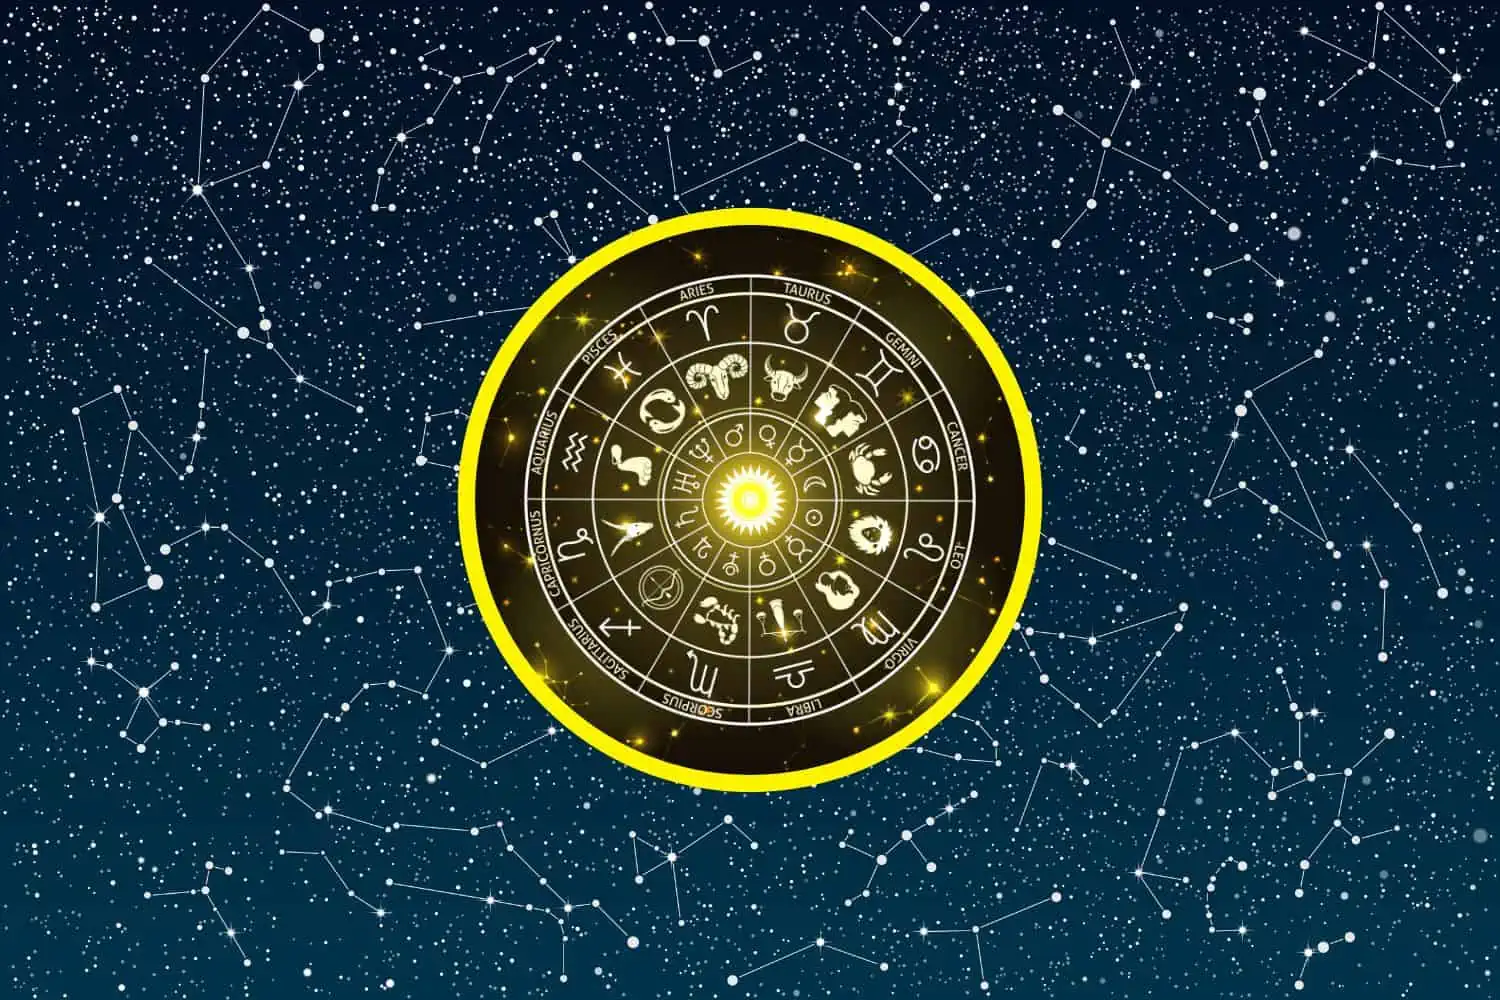 Today’s Free Horoscopes Tuesday 7 February 2023